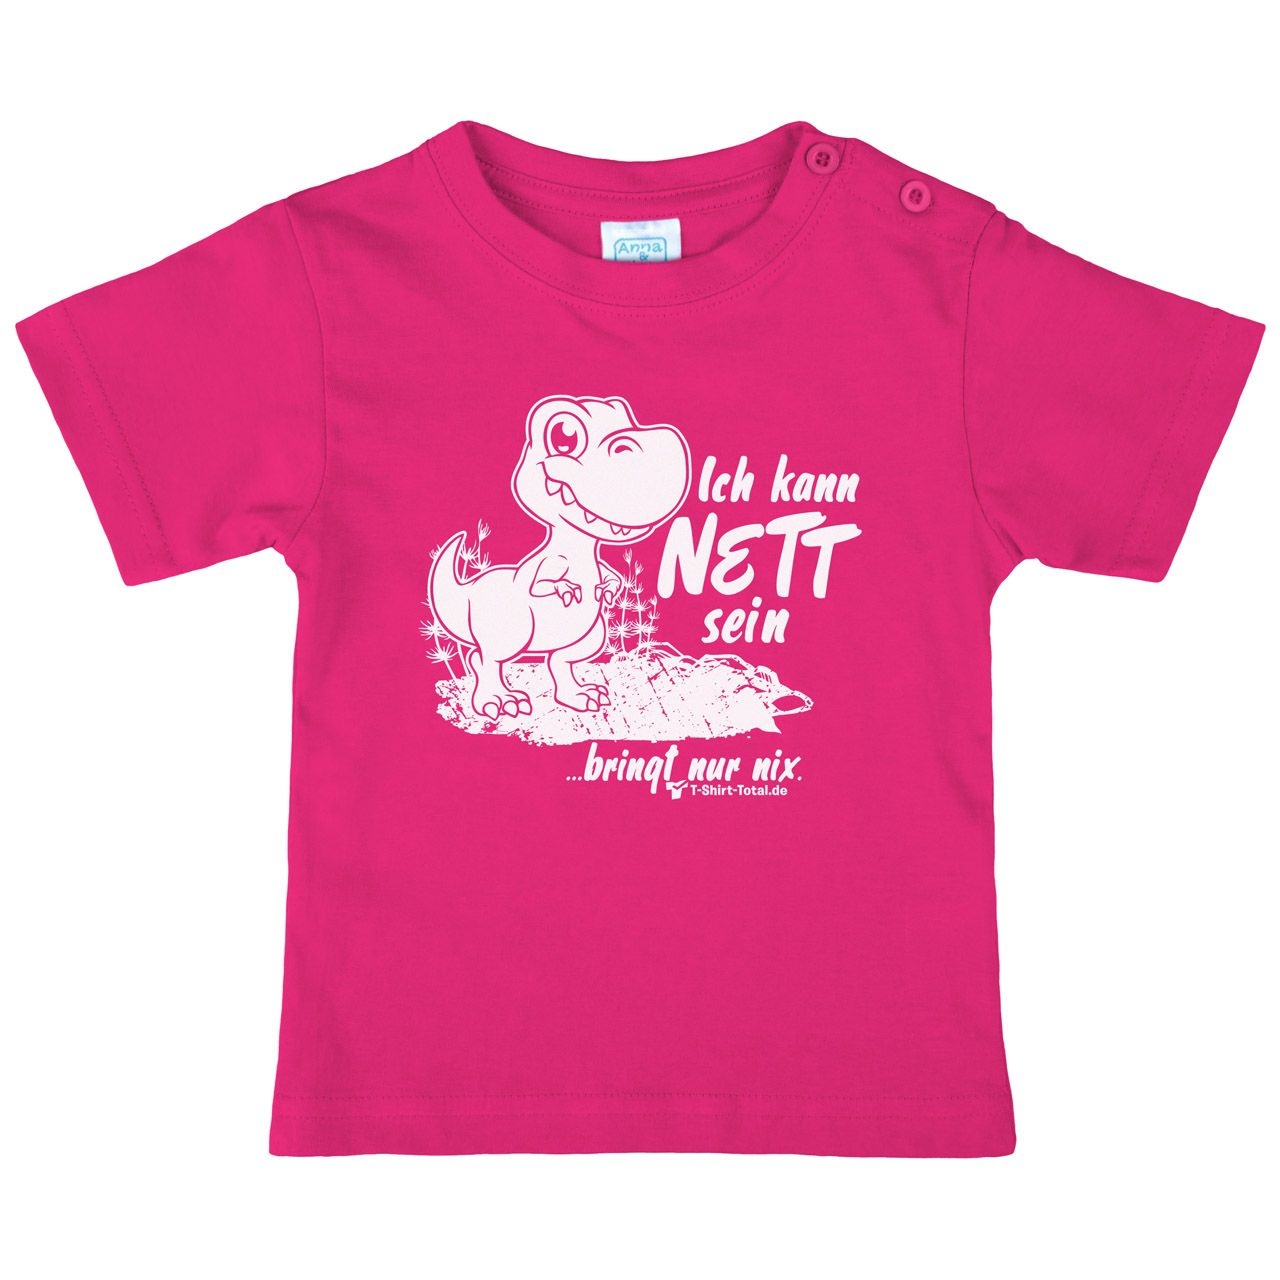 Kann nett sein Kinder T-Shirt pink 98